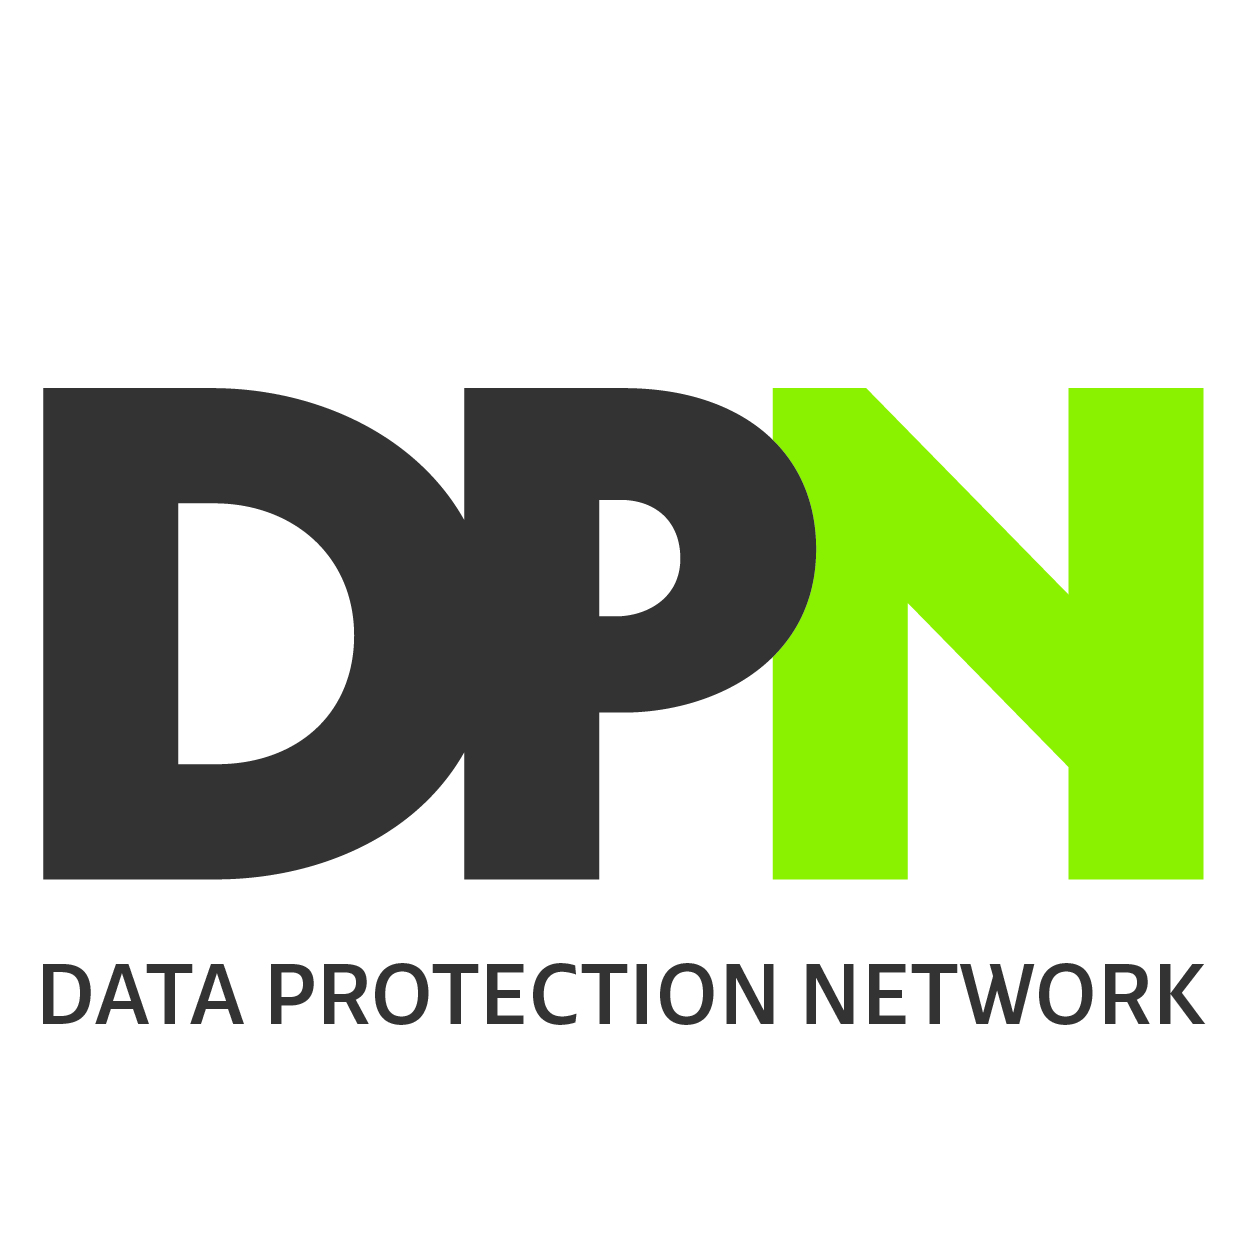 DPN_Data Protection Network_CMYK.jpg